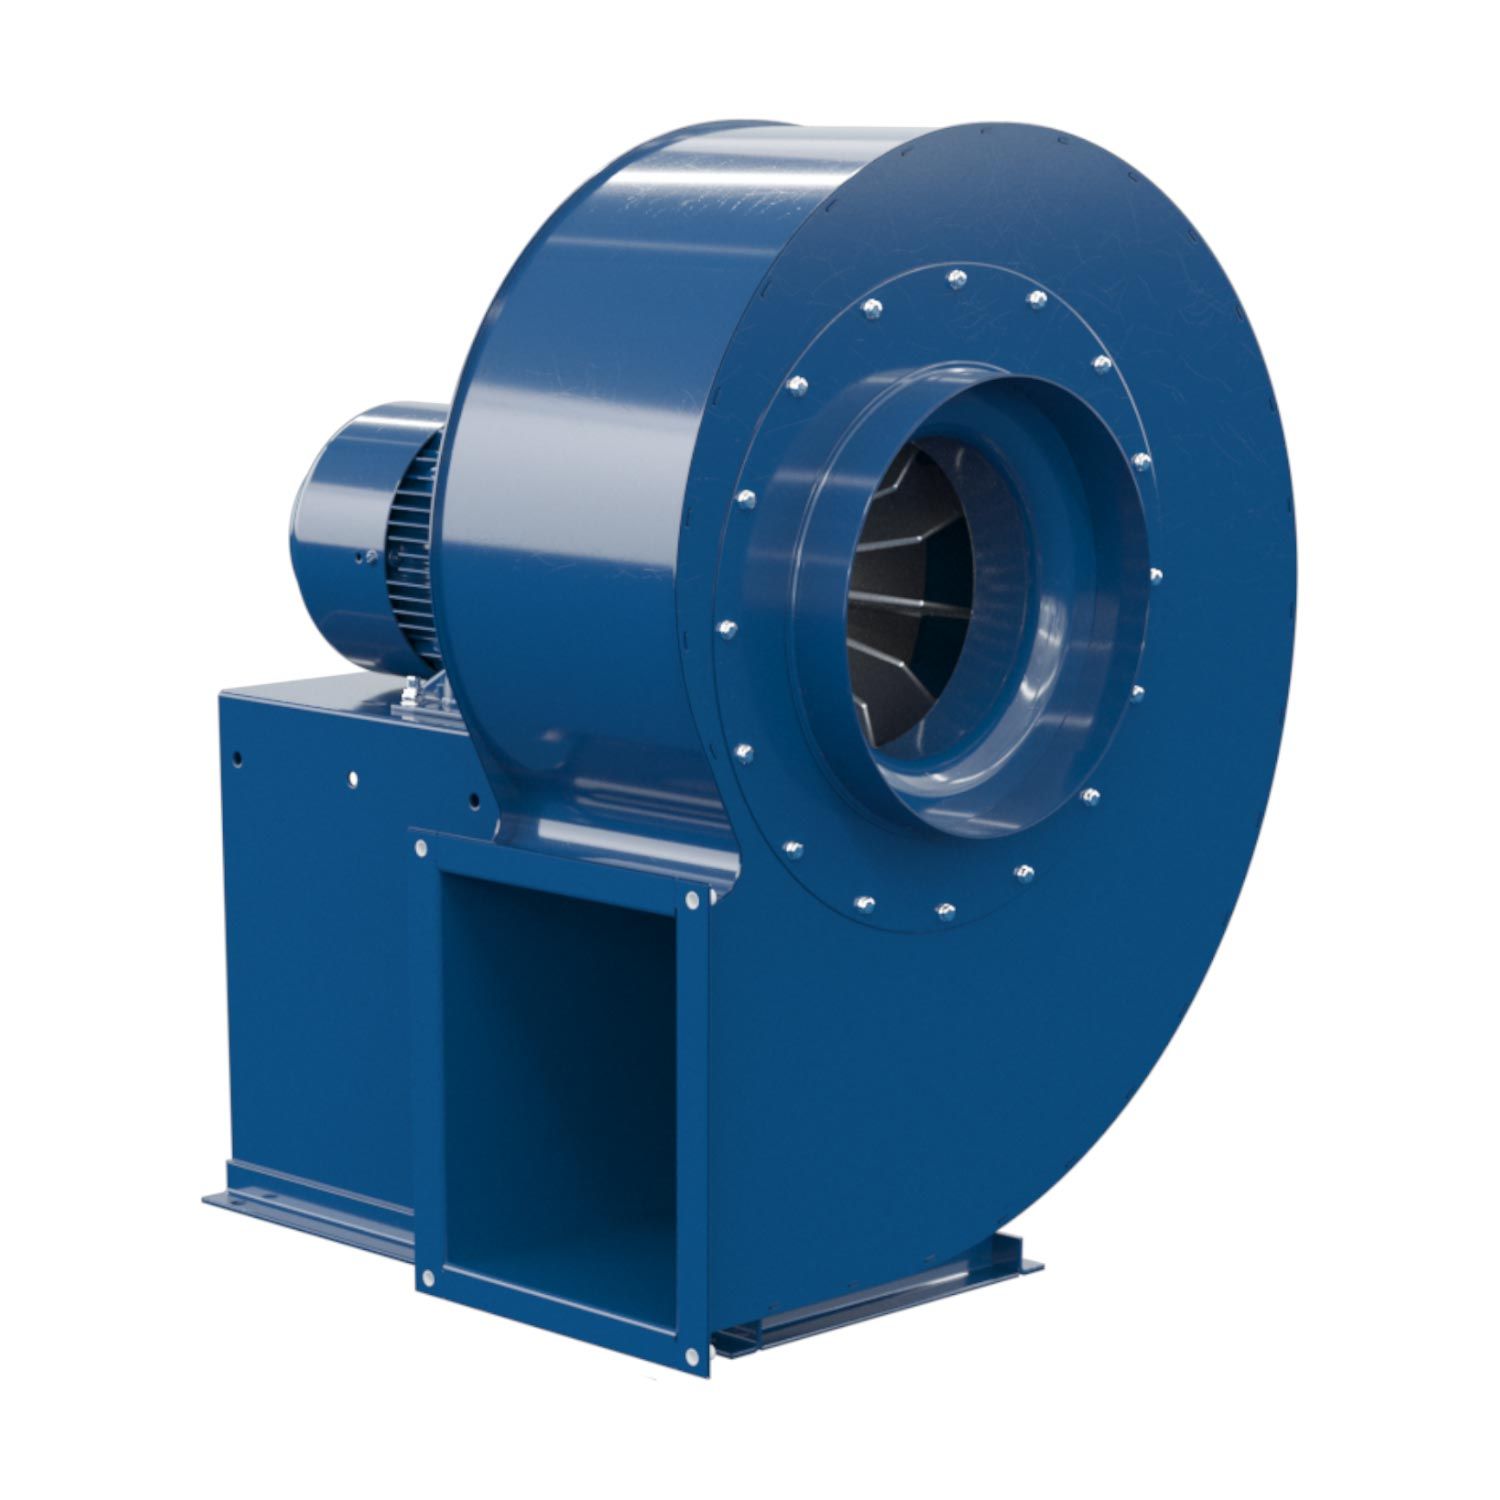 Ft 18001 - ventilateur centrifuge industriel - fumex - puissance nominale 1,10 kw_0